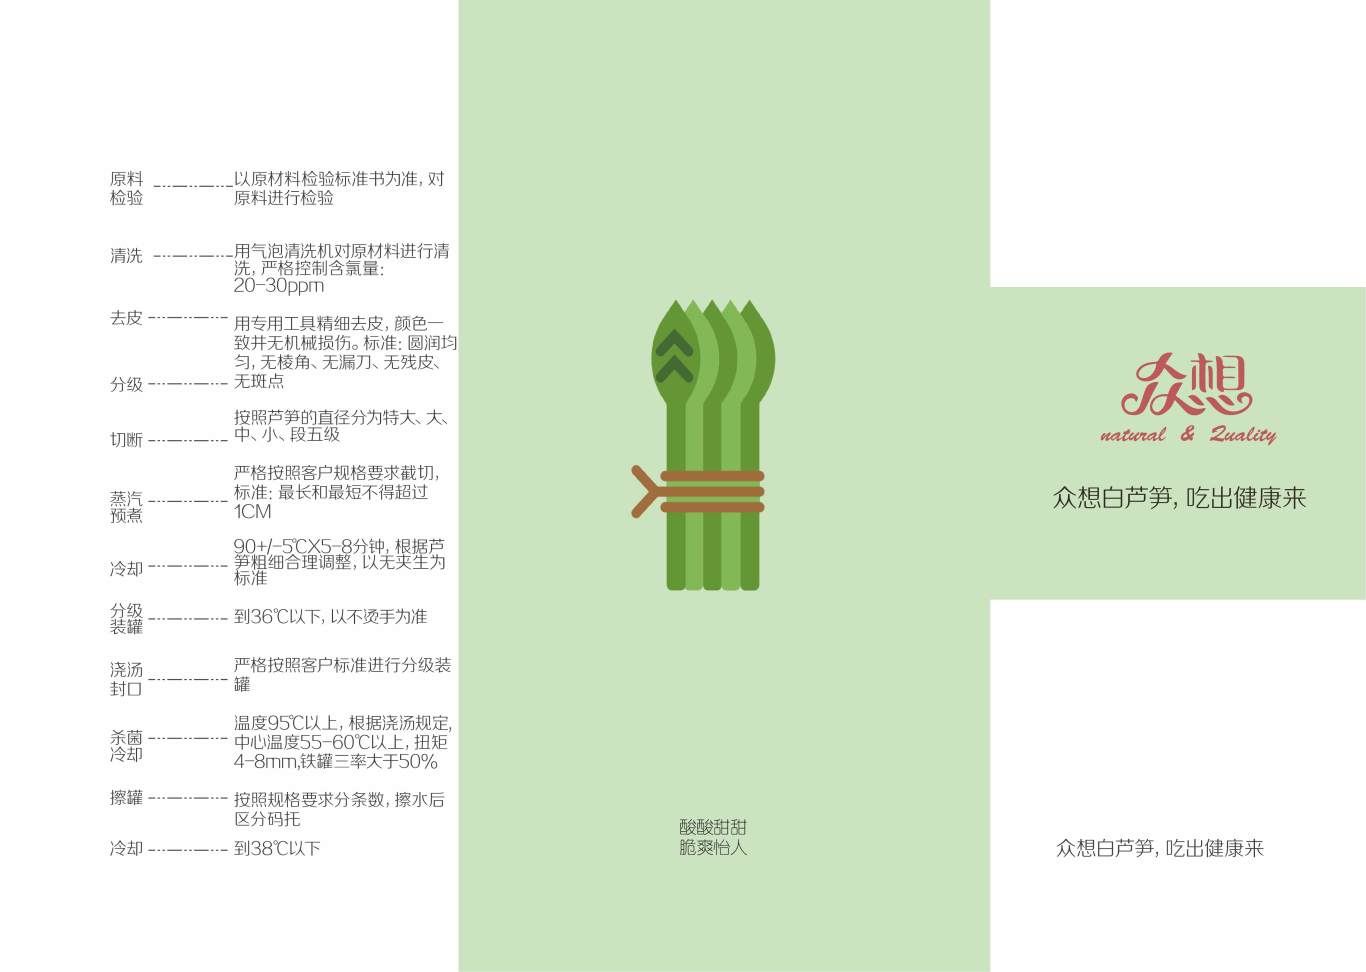 芦笋产品宣传折页图0